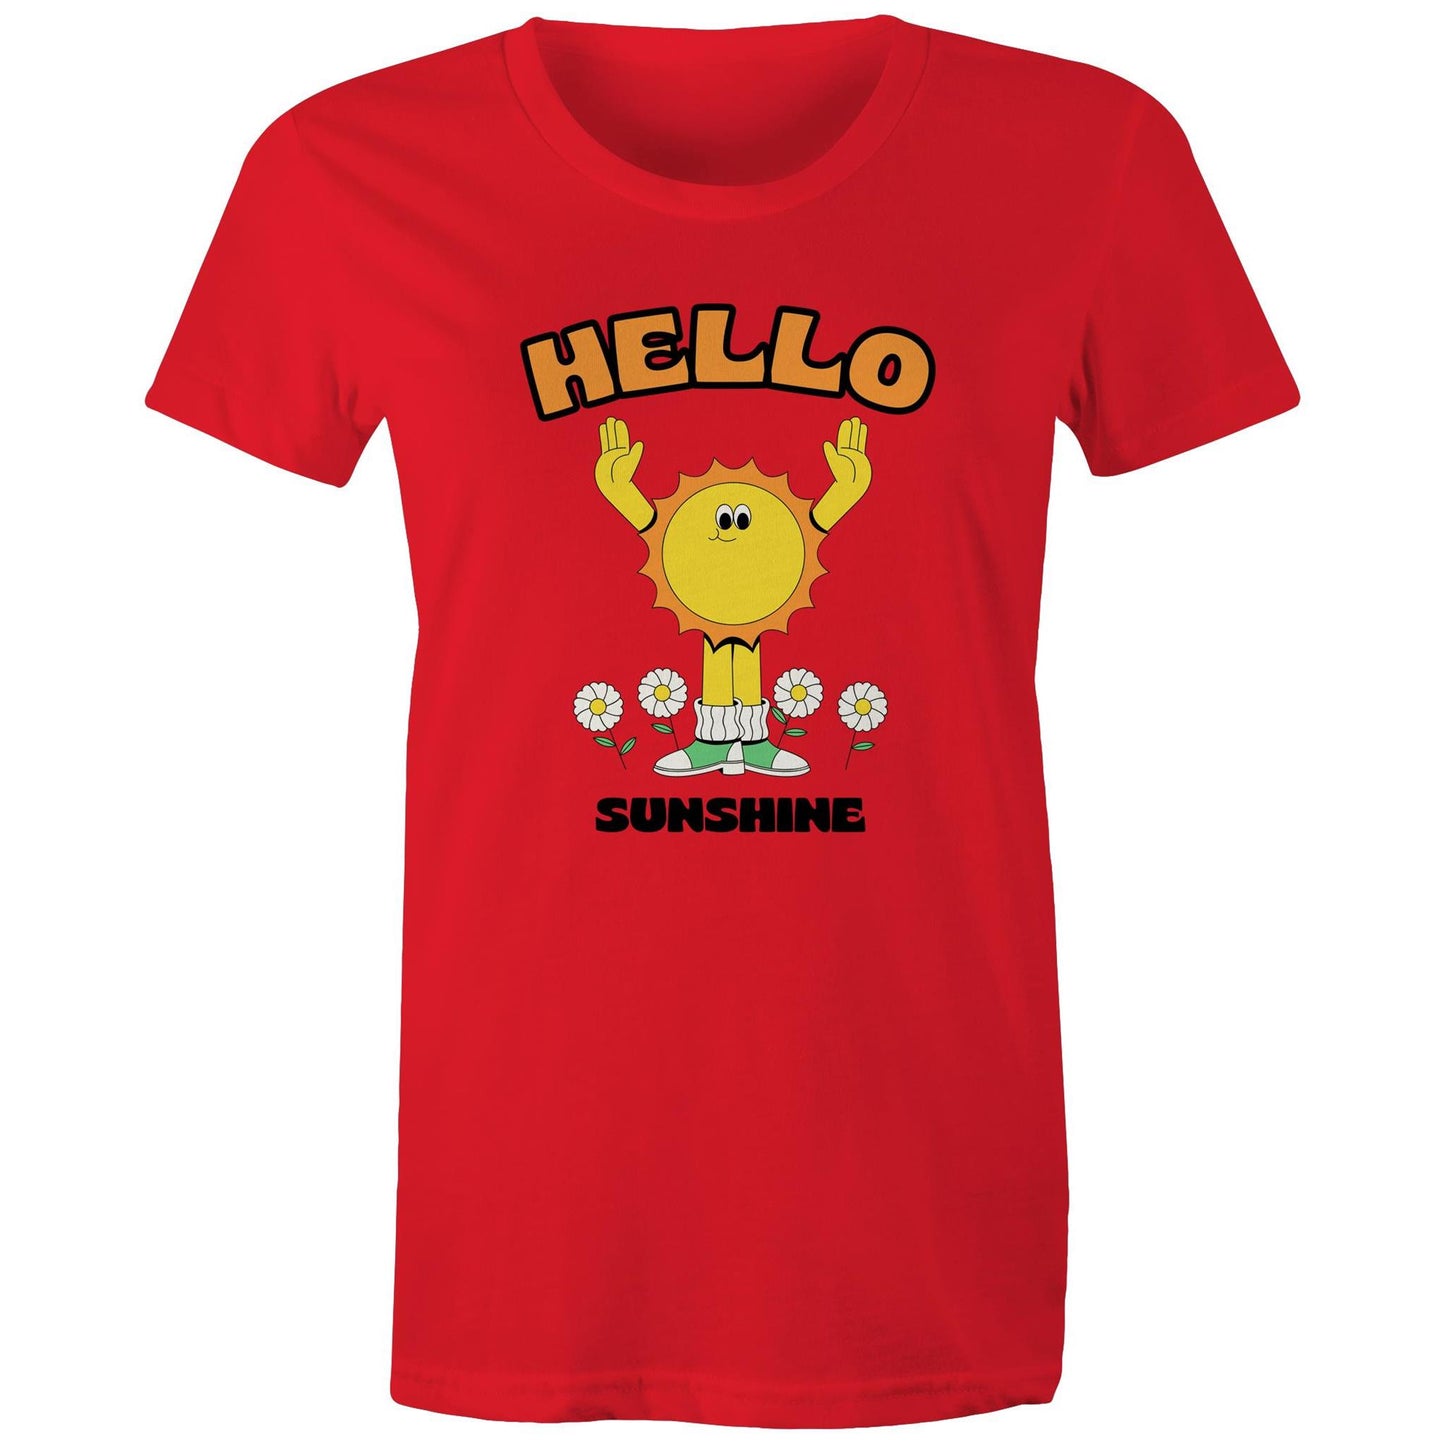 Hello Sunshine - Womens T-shirt Red Womens T-shirt Retro Summer